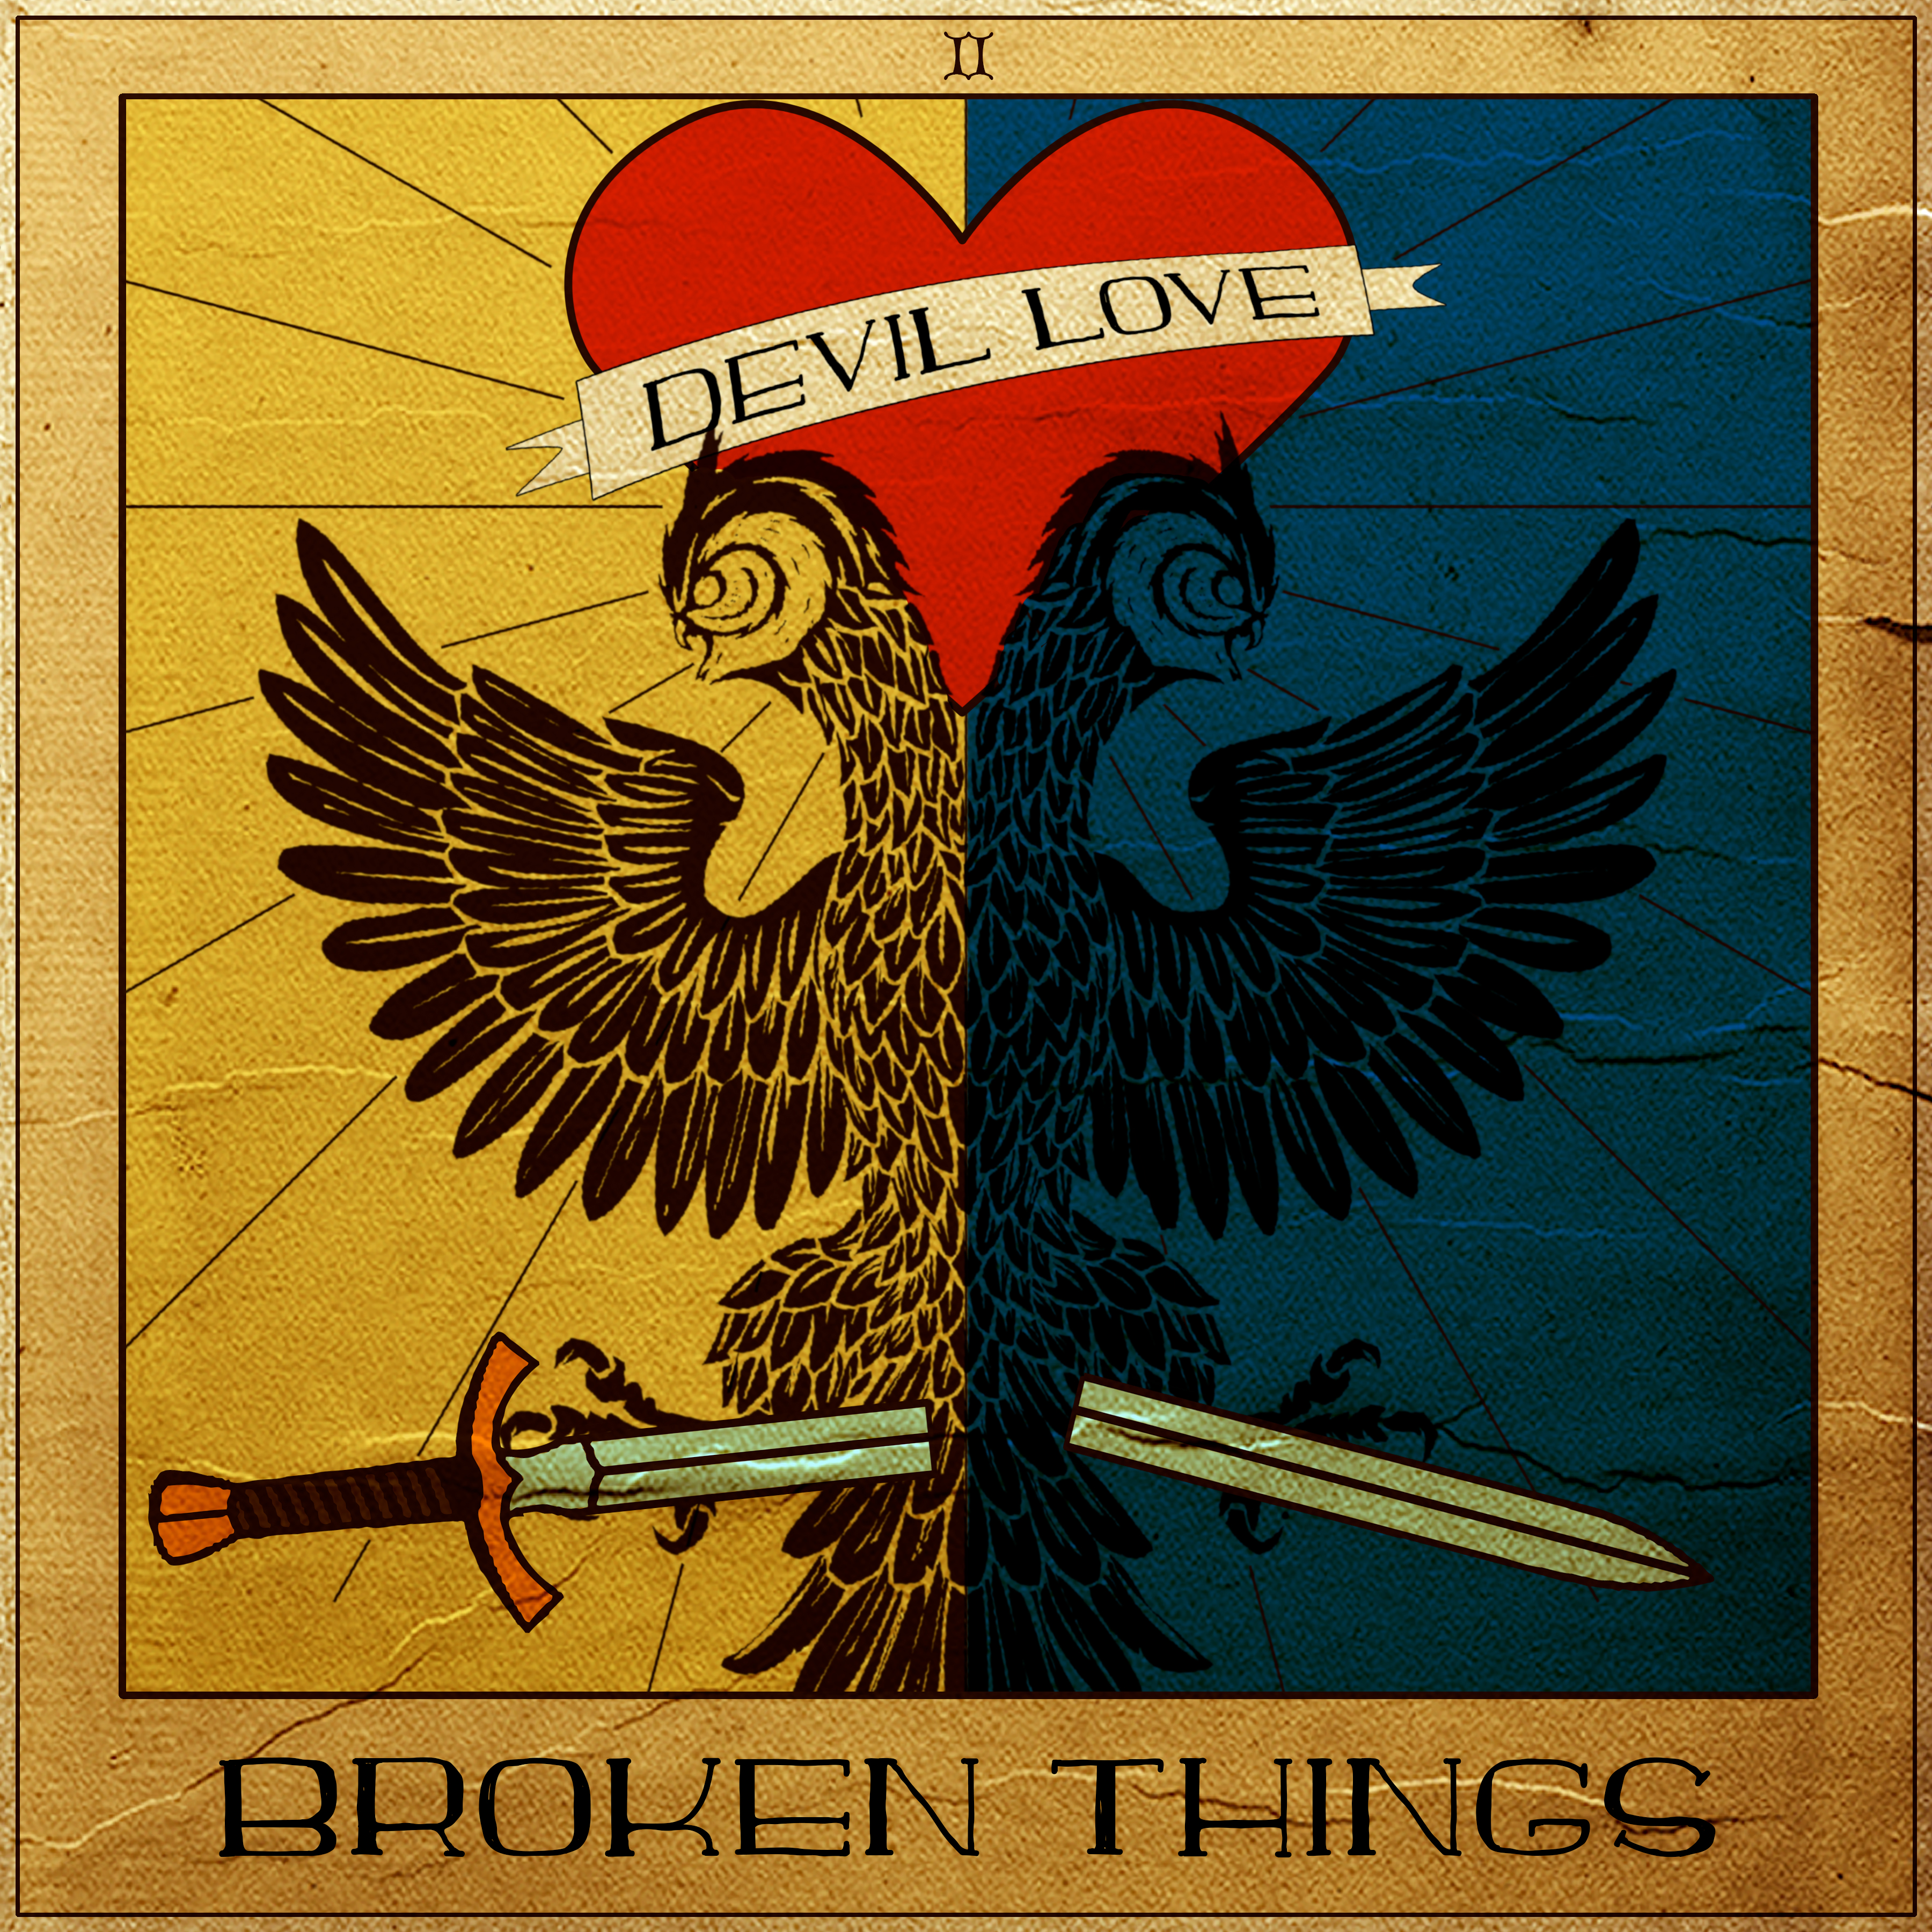 Devil Love brings a fine development to 90s alt-rock on Broken Things